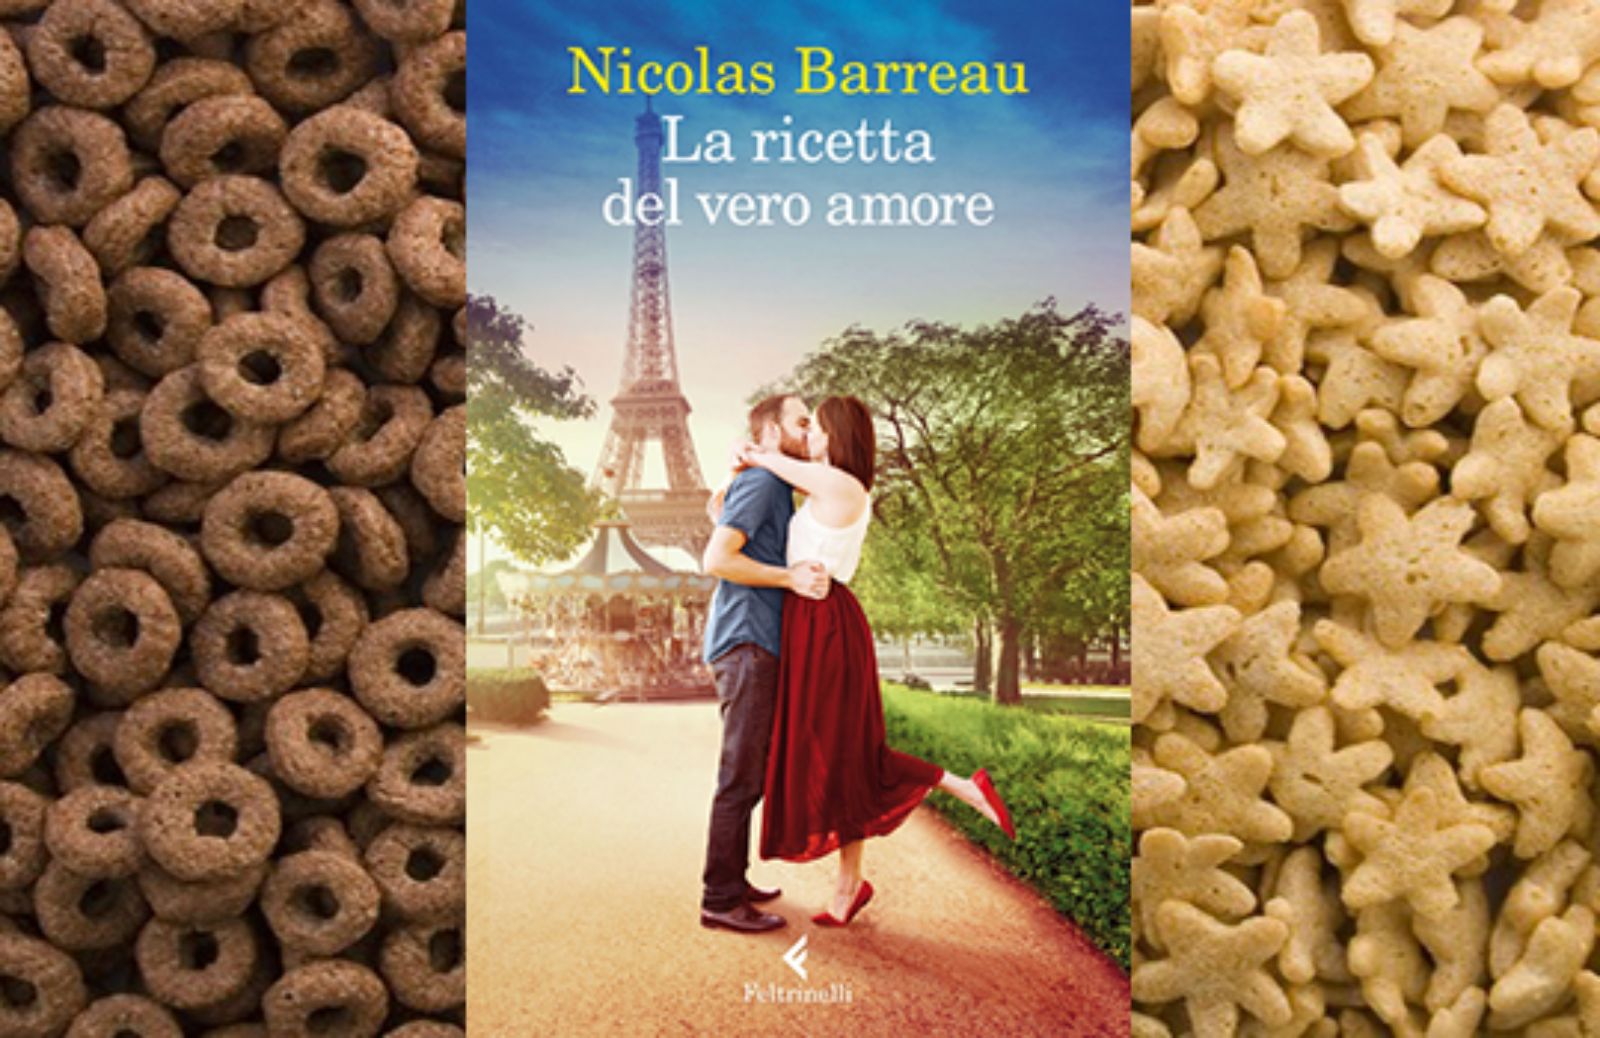 La ricetta del vero amore, il nuovo romanzo di Nicolas Barreau